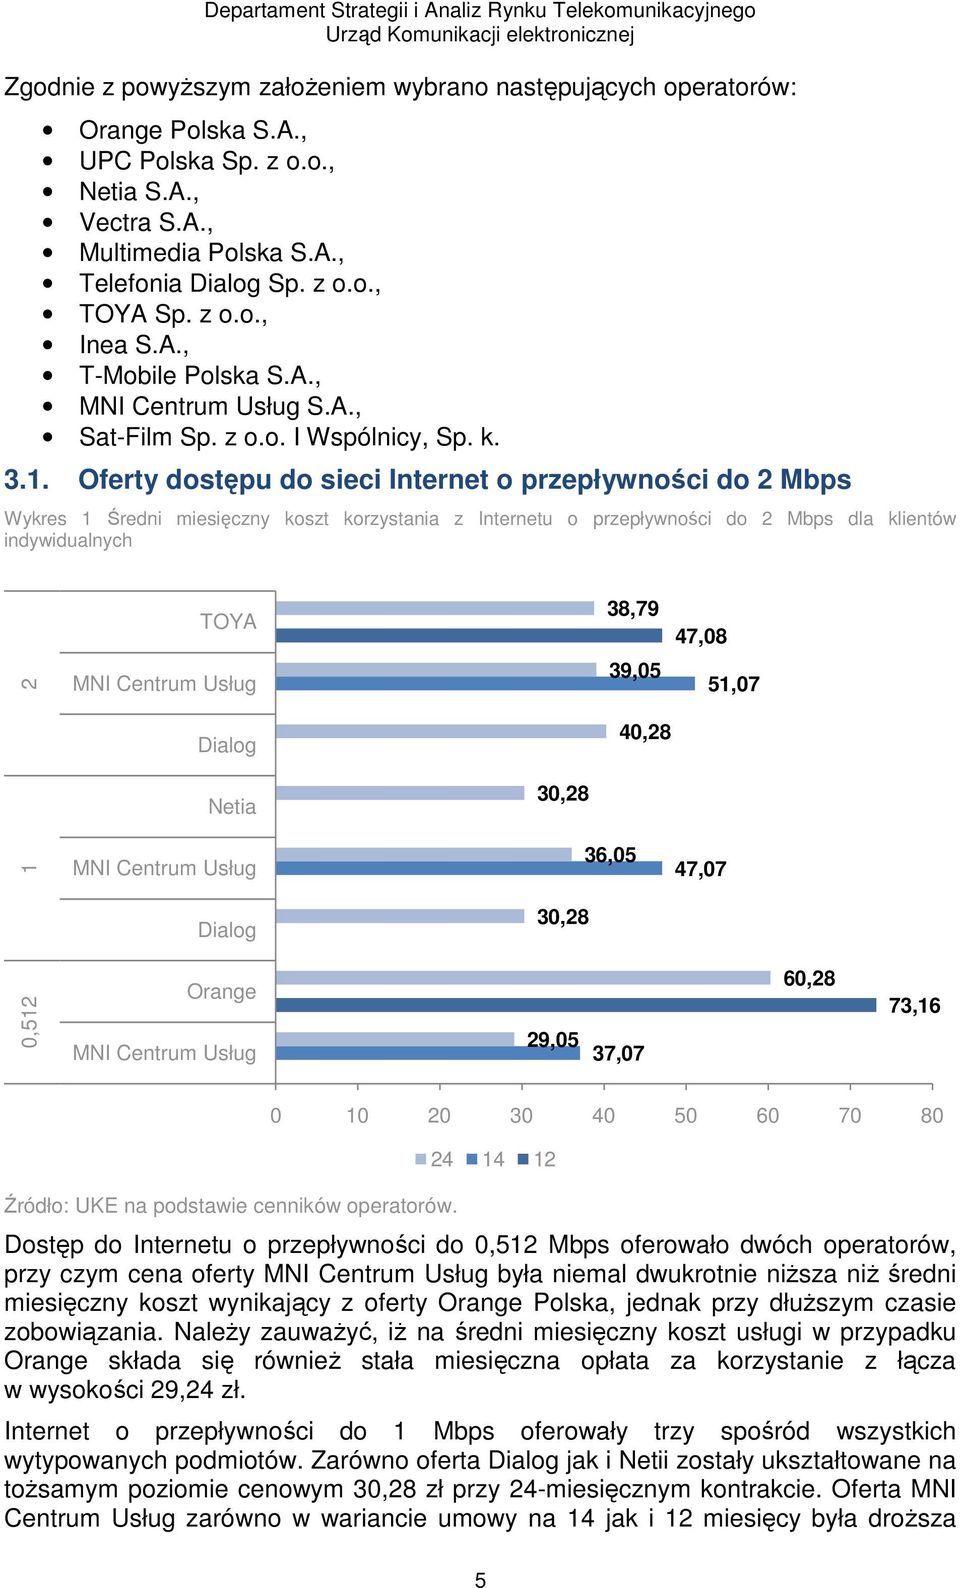 Oferty dostępu do sieci Internet o przepływności do 2 Mbps Wykres 1 Średni miesięczny koszt korzystania z Internetu o przepływności do 2 Mbps dla klientów indywidualnych TOYA 38,79 47,08 0,512 1 2